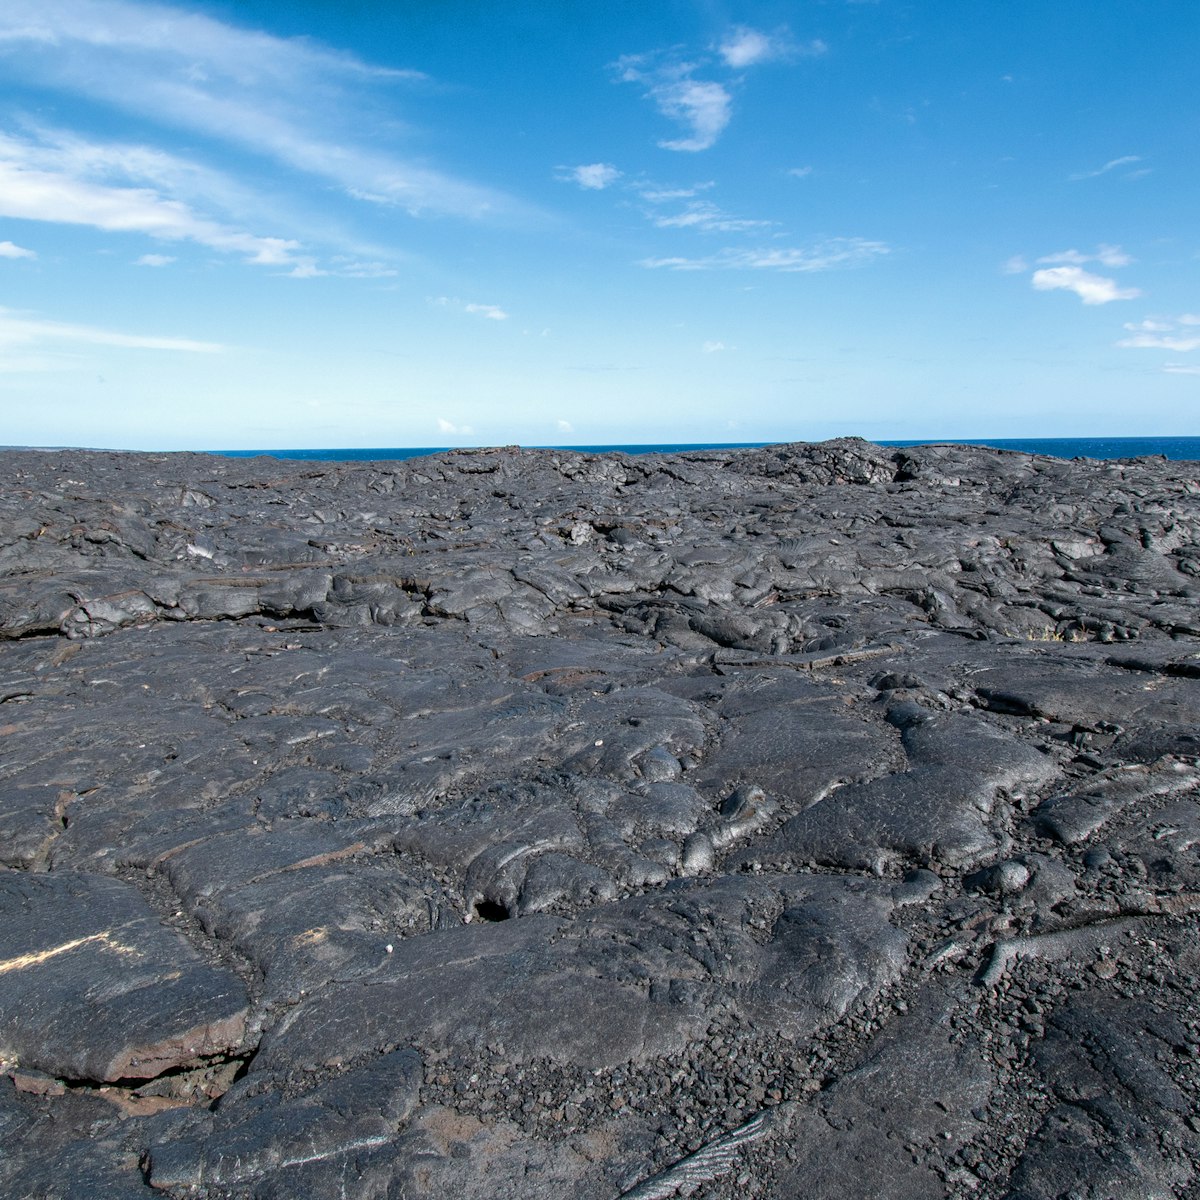 Mauna Ulu lava flows in Big Island Hawaii
1213642177